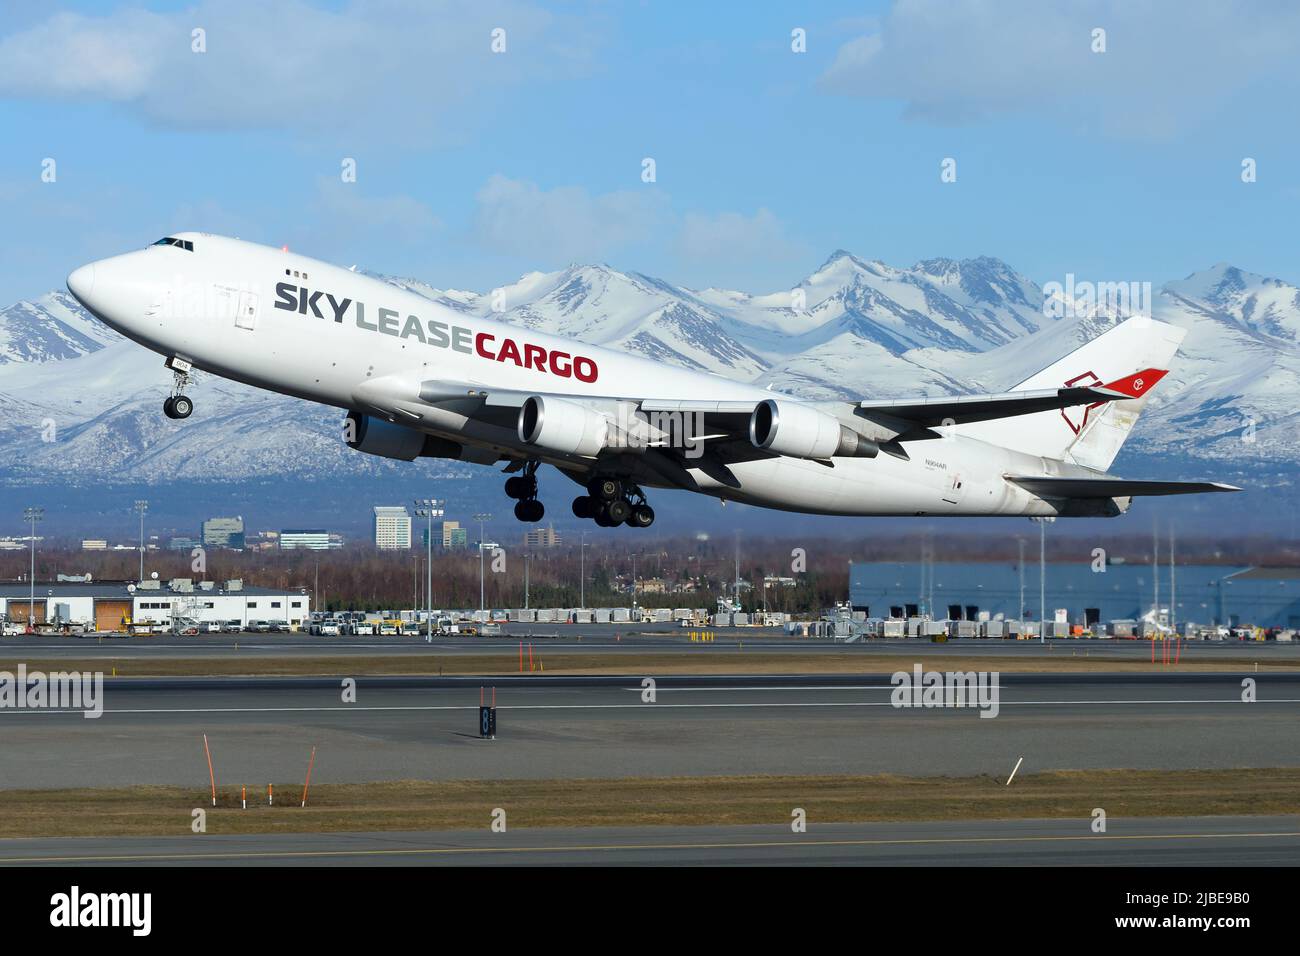 Boeing 747-400 Skylease cargo au départ de l'aéroport d'Anchorage. Avion 747-400F  de Sky Lease Cargo pendant le décollage. Plan de quatre moteurs Photo Stock  - Alamy